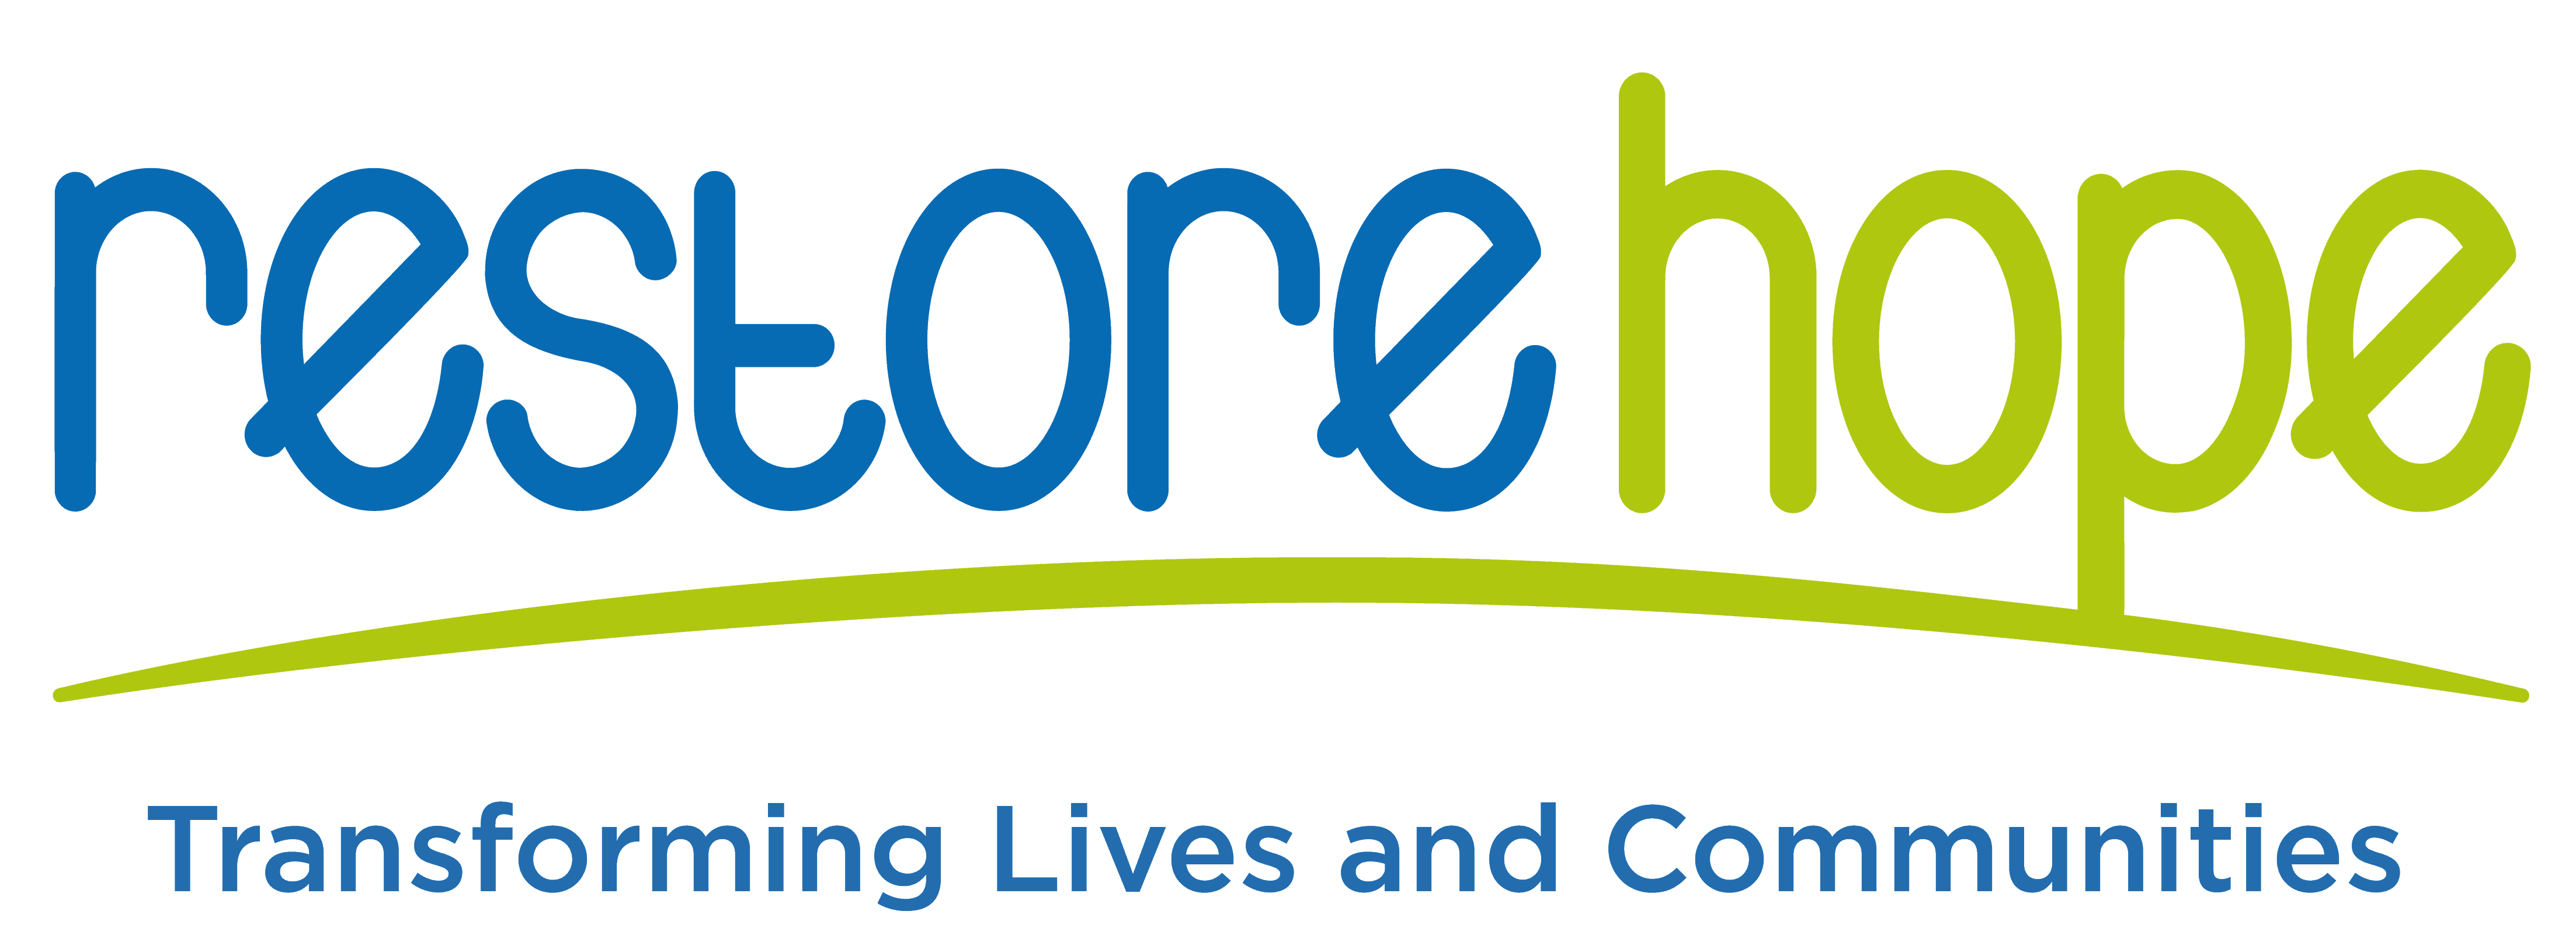 RestoreHope-logo